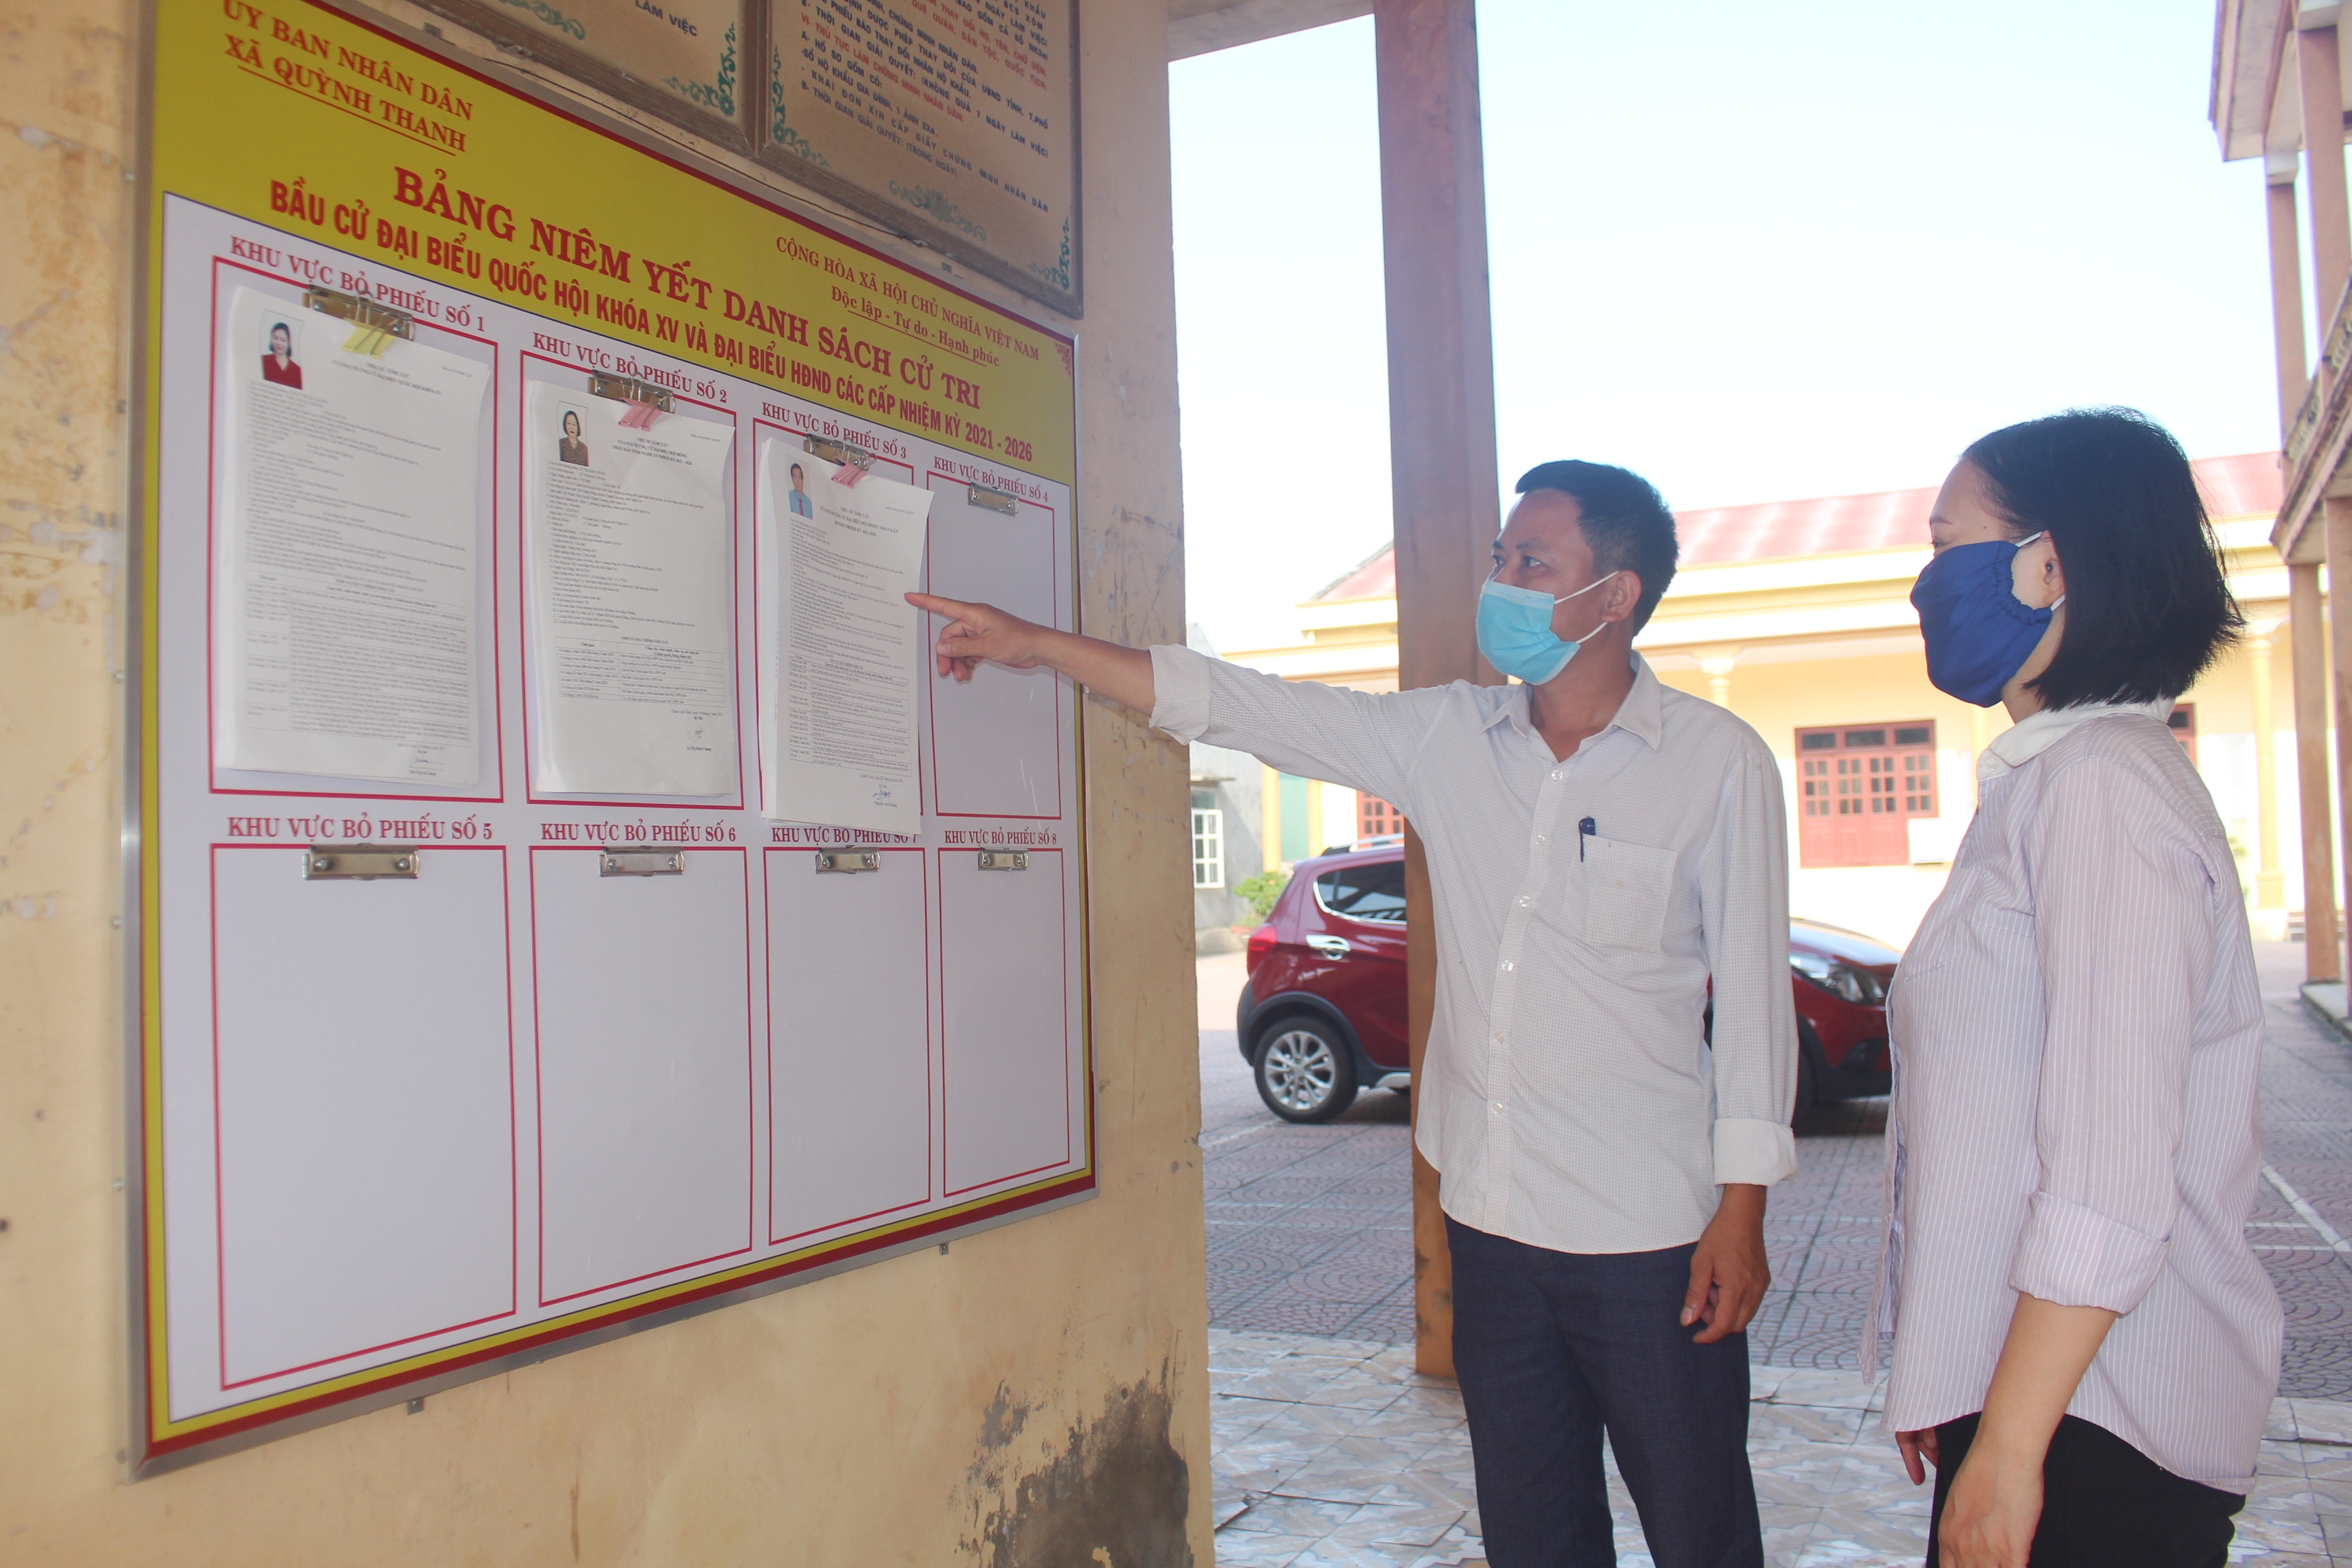 Cử tri xã Quỳnh Thanh xem danh sách đại biểu ứng cử và danh sách cử tri tại nhà văn hóa thôn. Ảnh